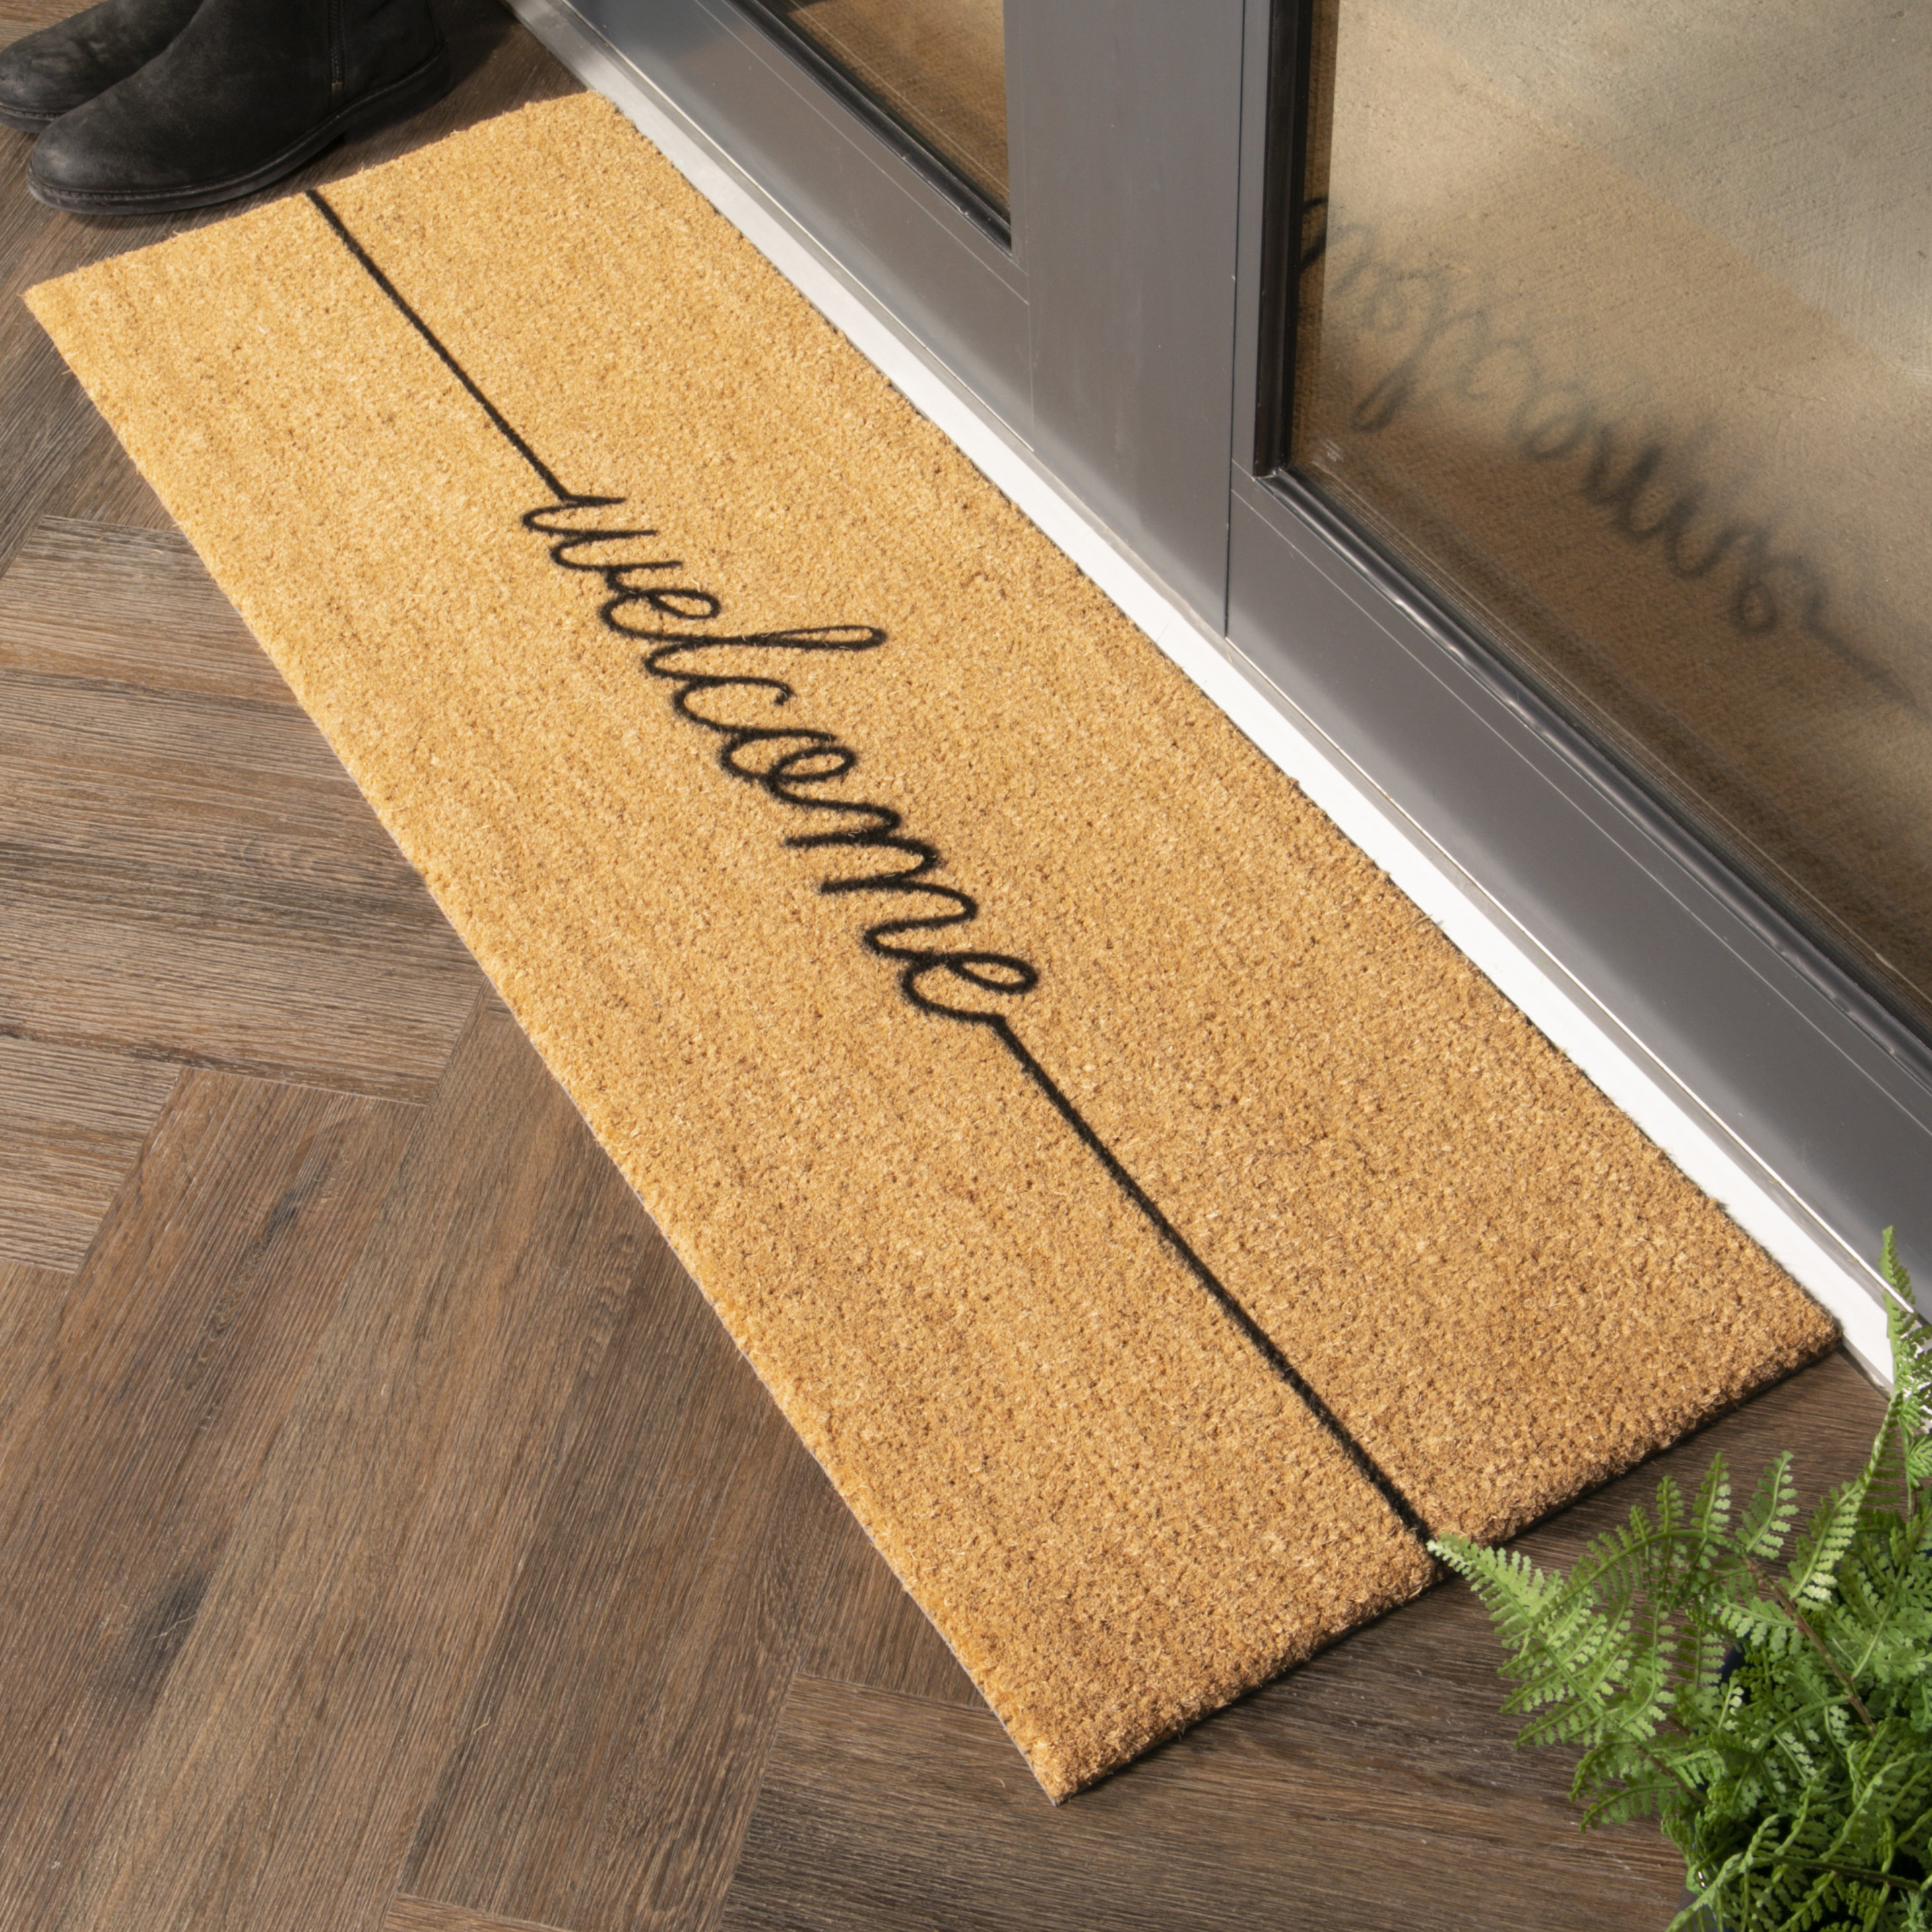 Entrance Front Door Mats Rug Waterproof PVC Non-Slip Doormat In/Outdoor  Allsize